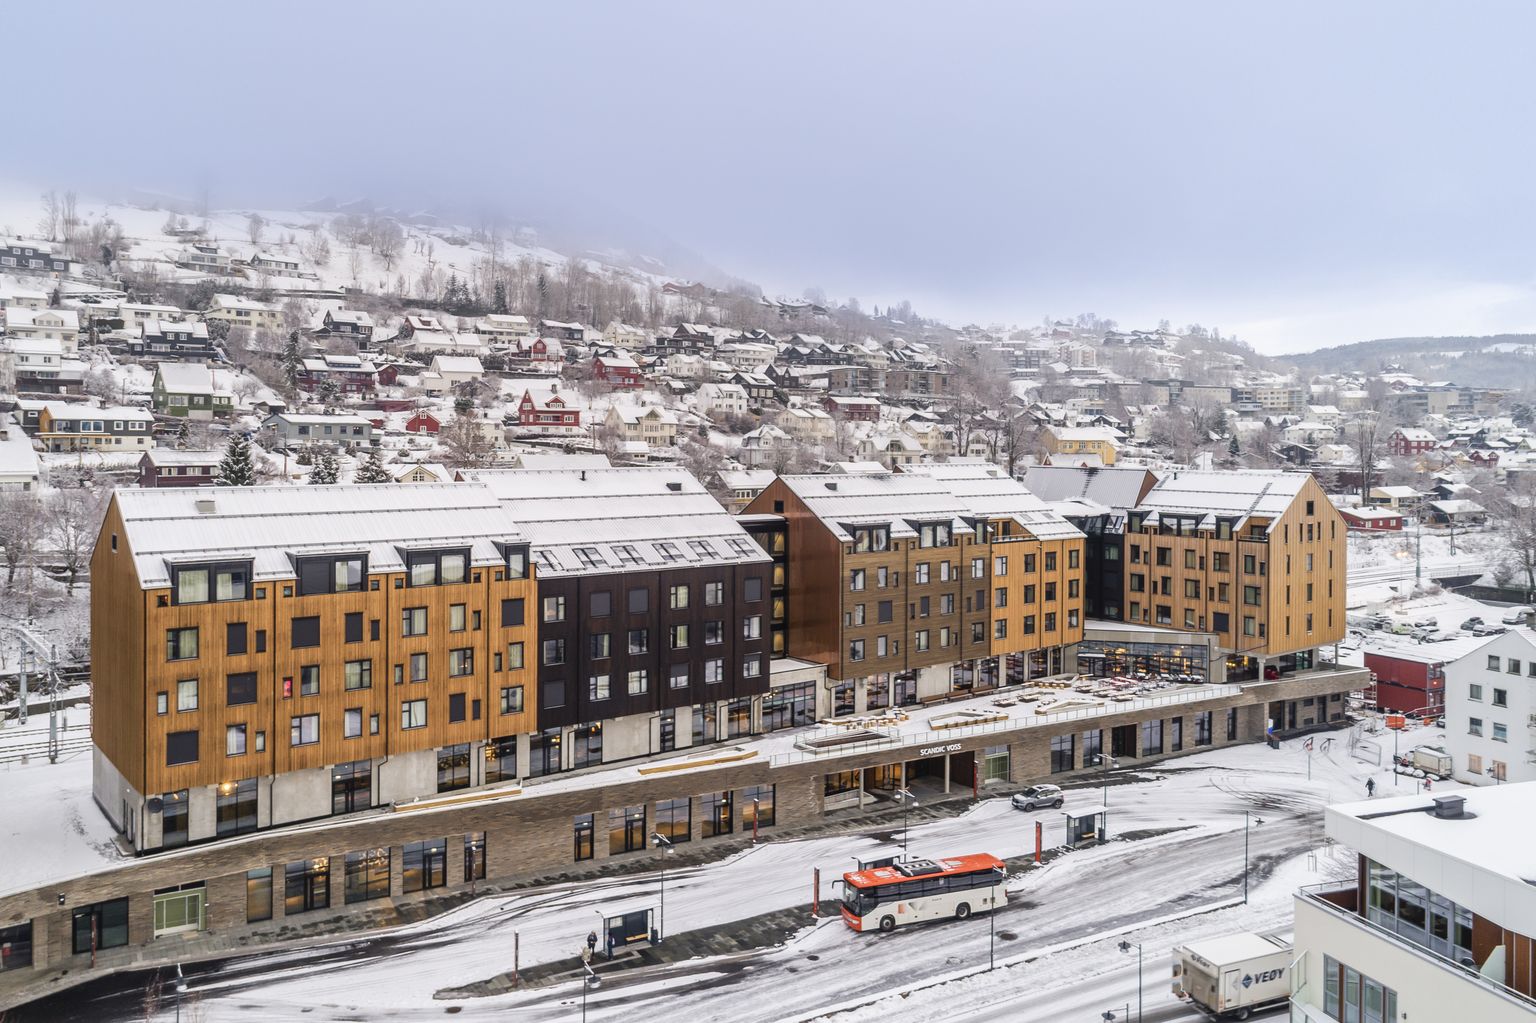 Üks mitmetest sektori edulugudest. Tehaseliselt eeltoodetud puitmoodulmaja, hotell- ja konverentsikeskus “Scandic Voss” Norras. Tootja: Kodumaja.